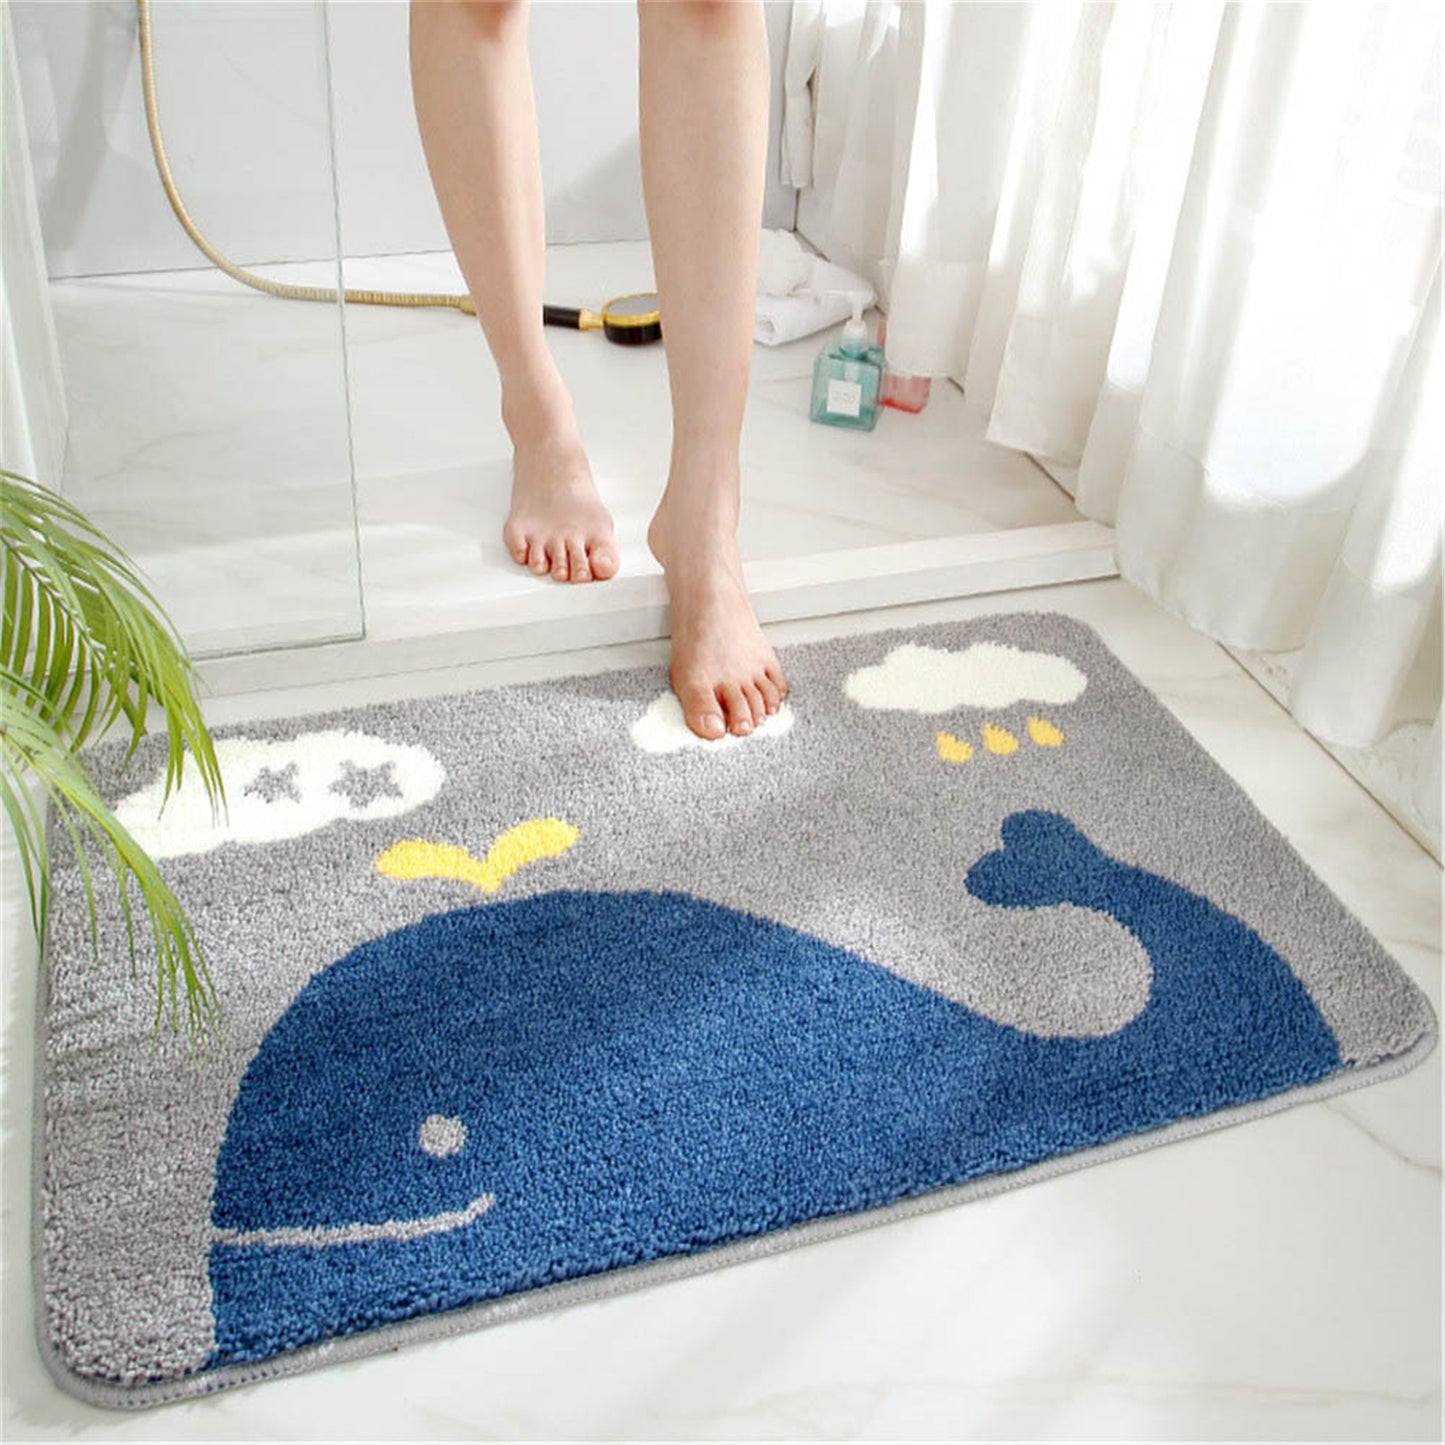 Whale bath mat colorful cute bathroom decor